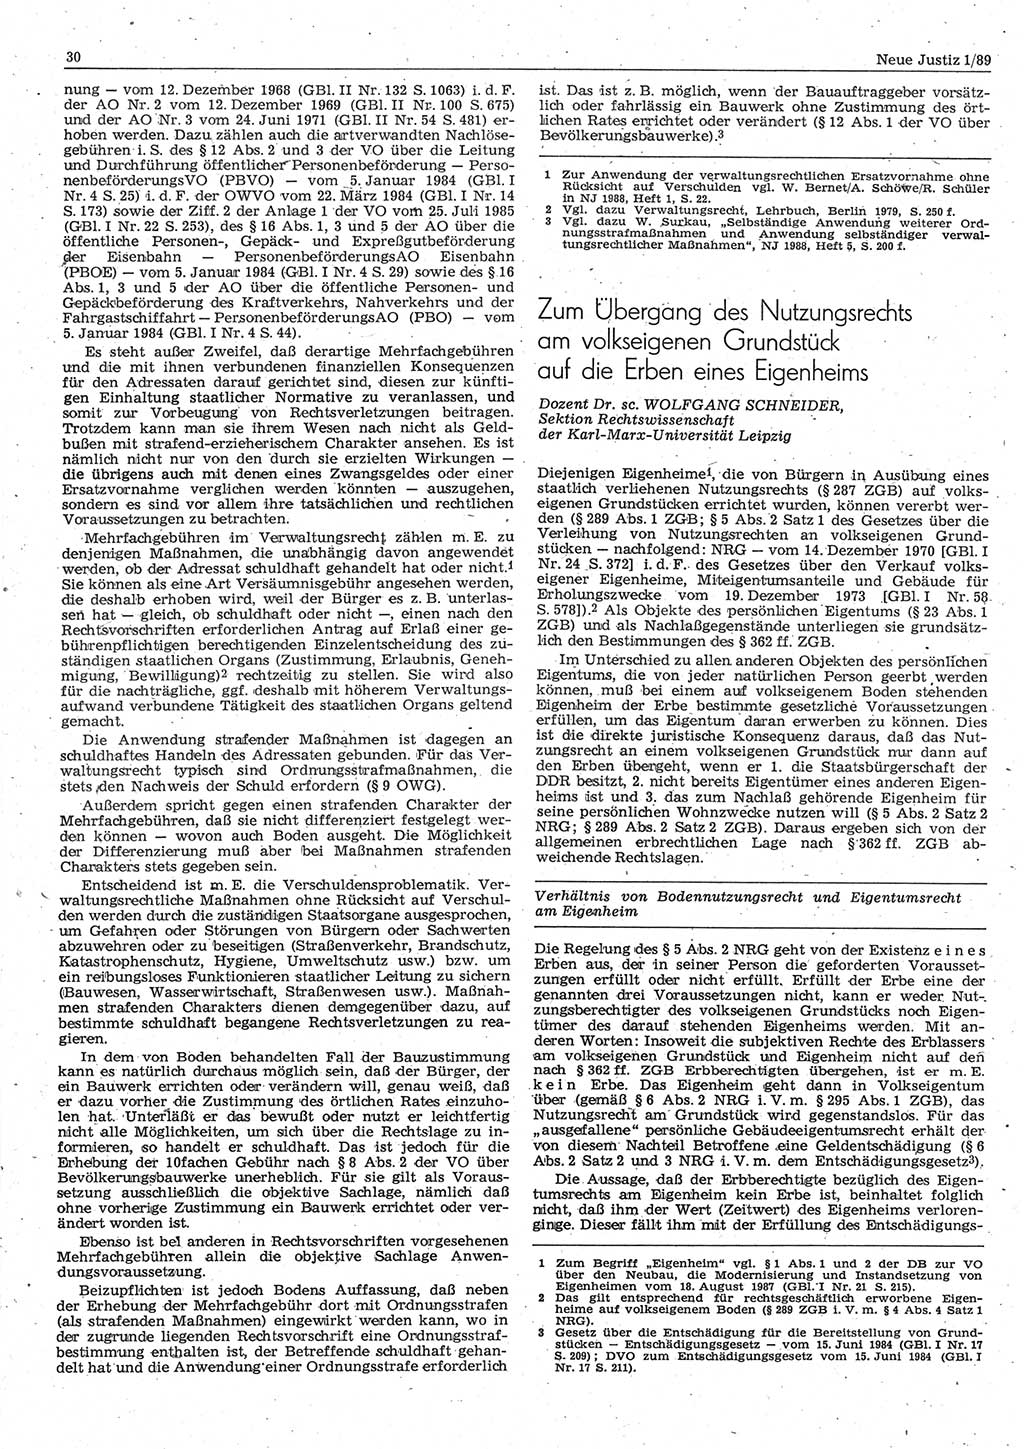 Neue Justiz (NJ), Zeitschrift für sozialistisches Recht und Gesetzlichkeit [Deutsche Demokratische Republik (DDR)], 43. Jahrgang 1989, Seite 30 (NJ DDR 1989, S. 30)